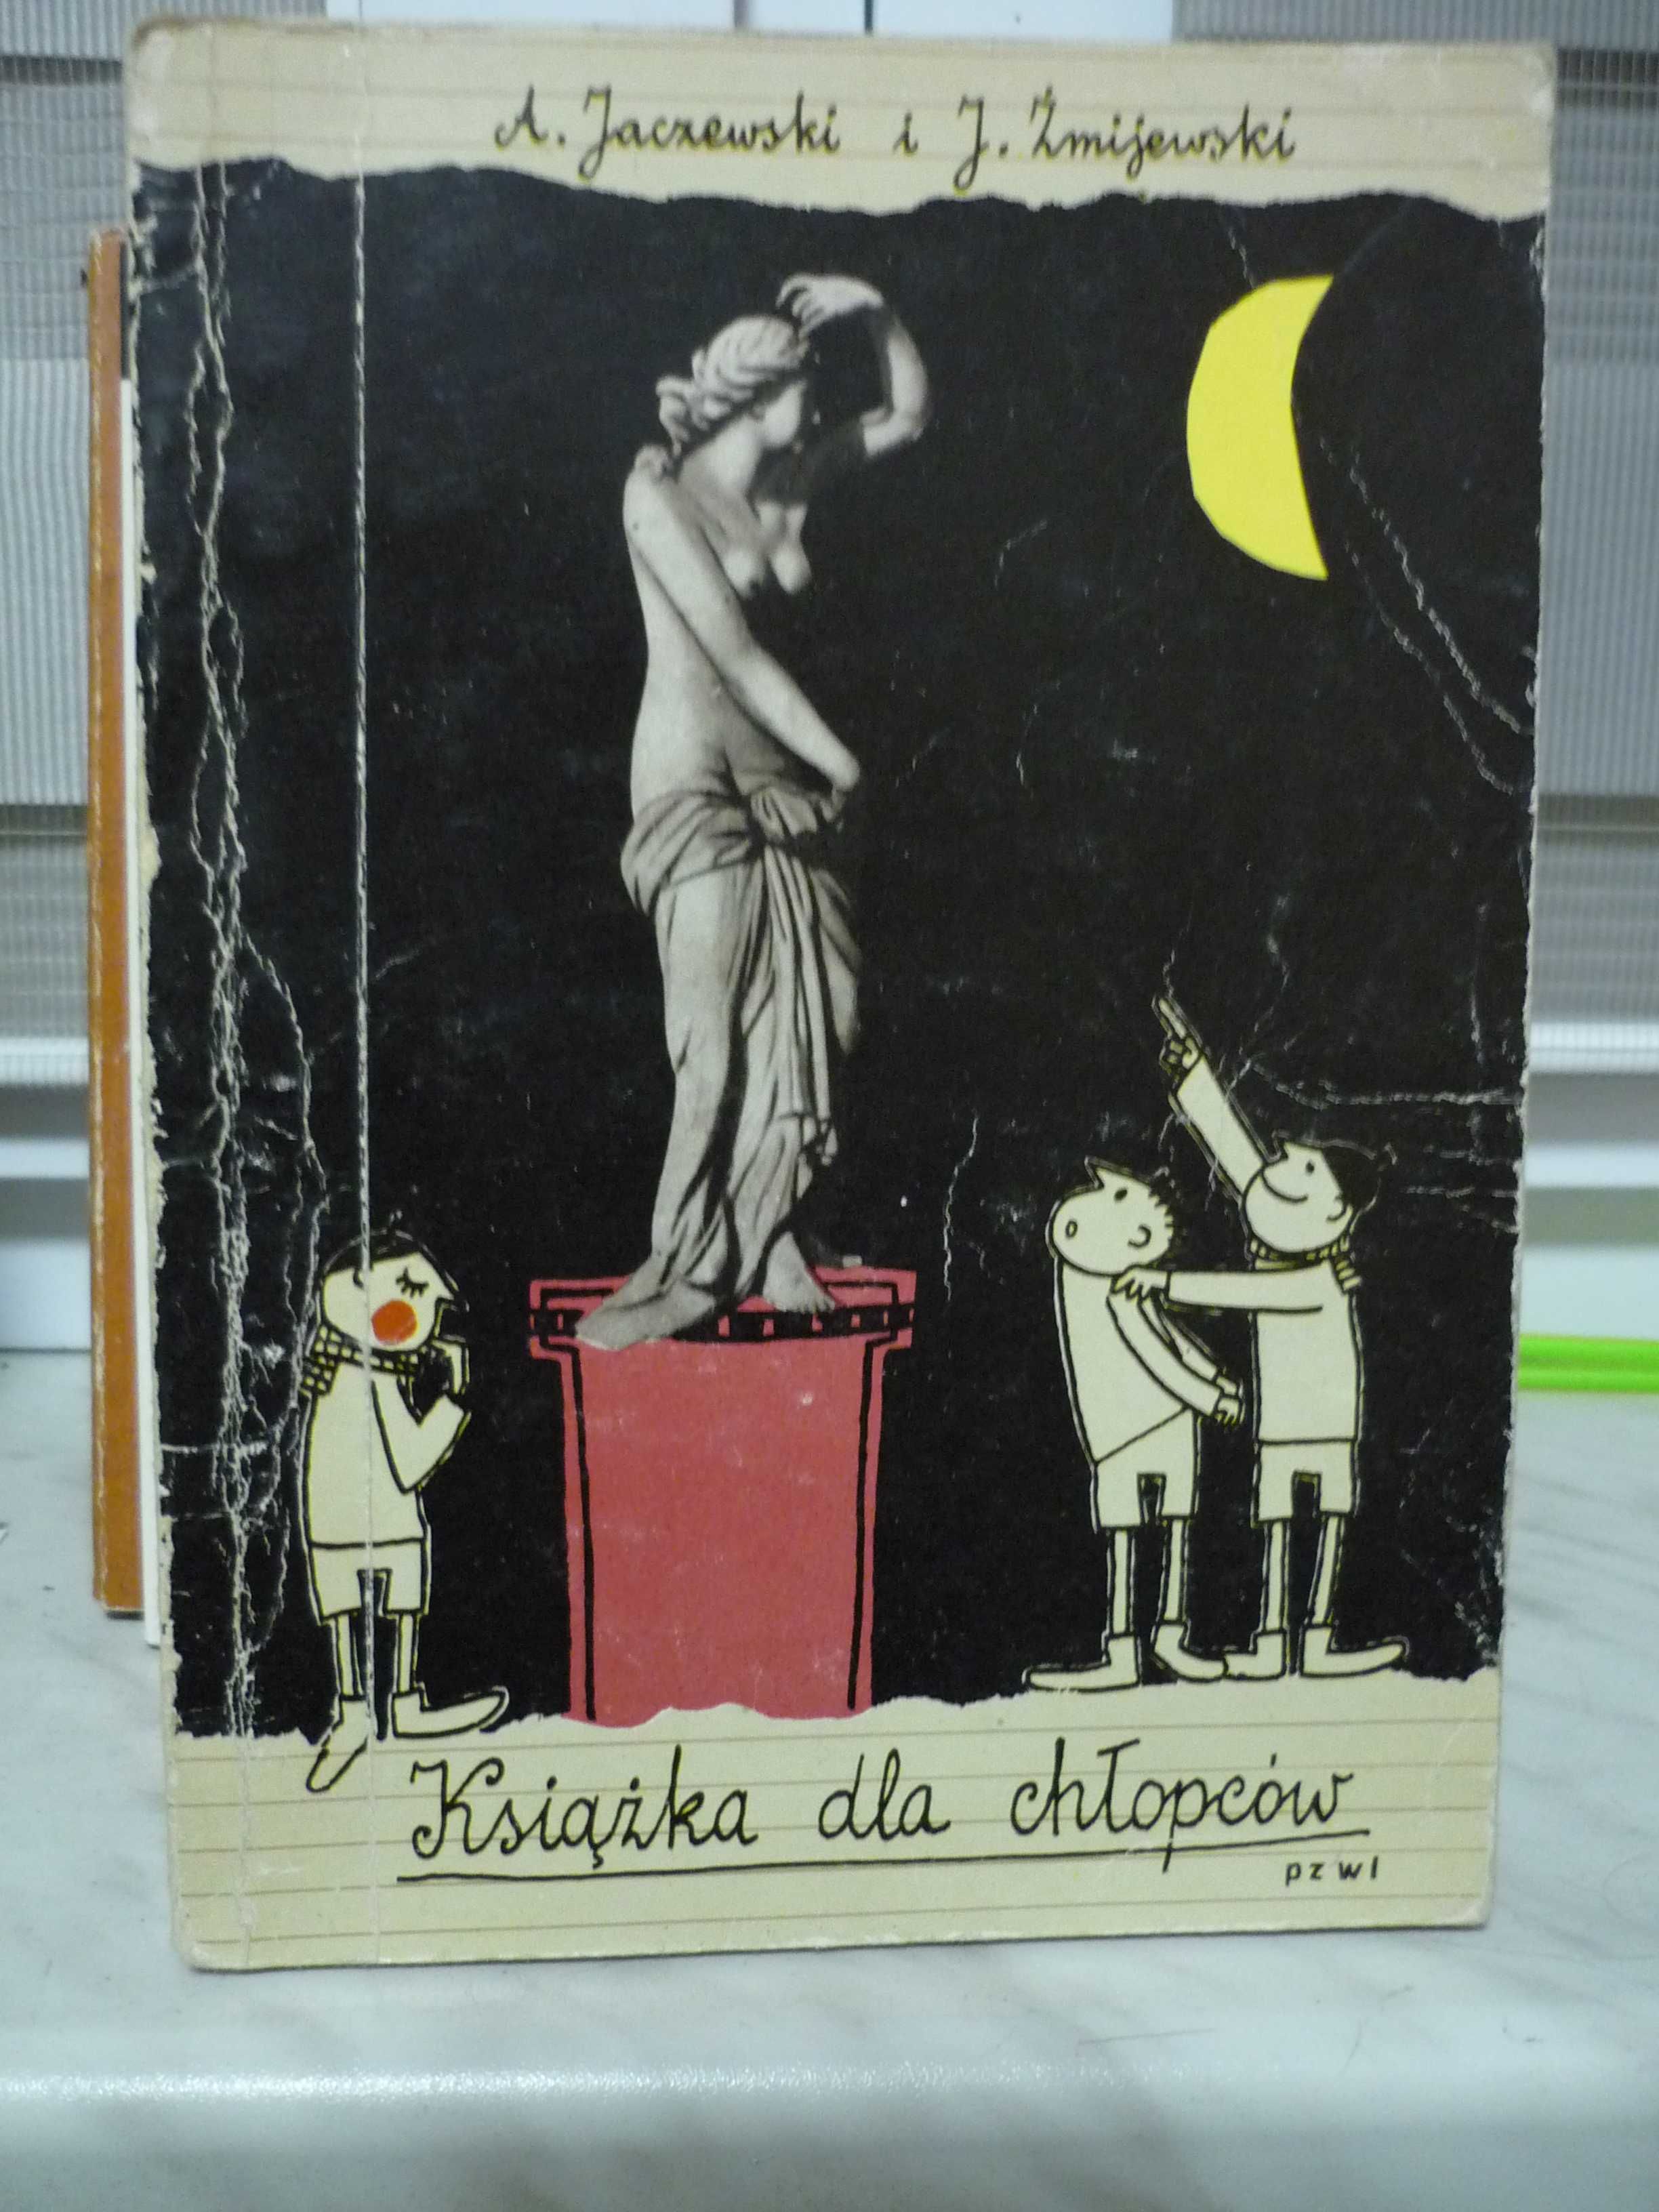 Książka dla chłopców , A.Jaczewski , J.Żmijewski.